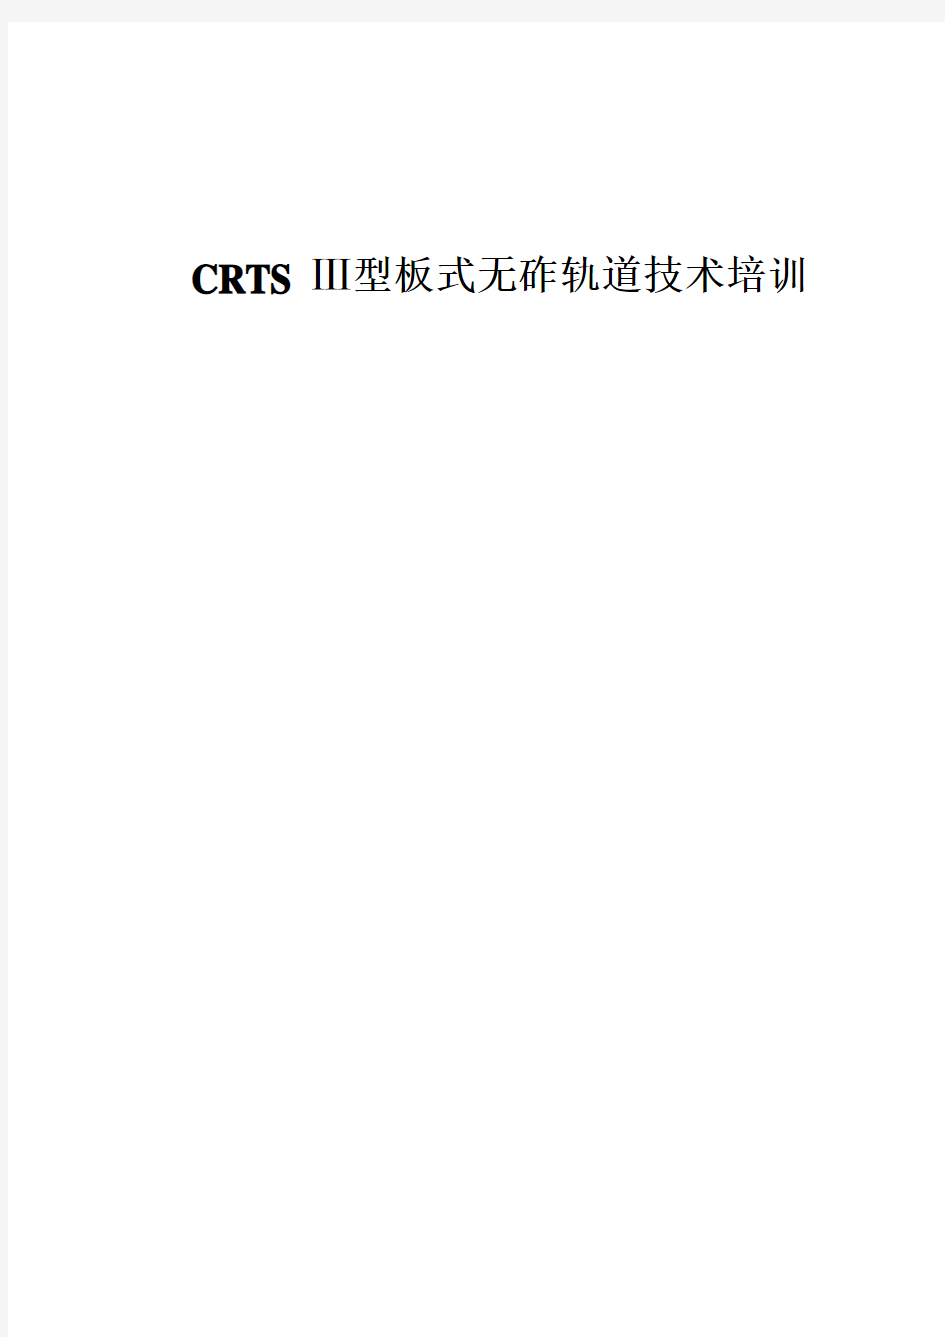 CRTS-Ⅲ型板式无砟轨道技术培训